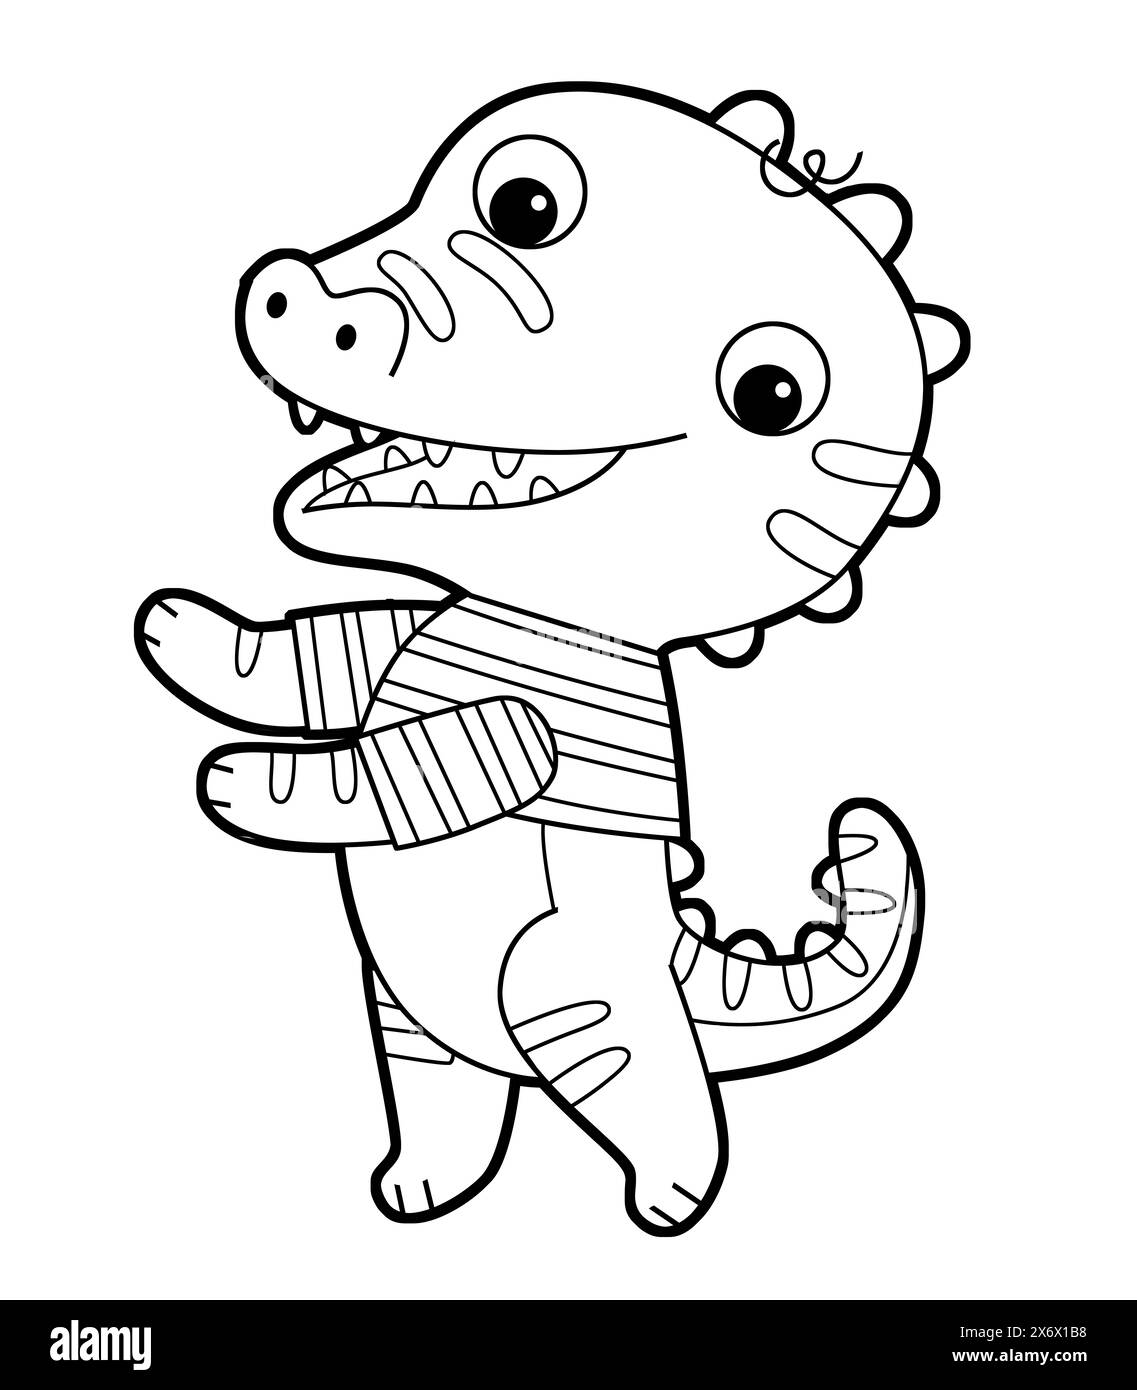 Zeichentrickszene mit fröhlichem lustigen Dinosaurier-Dino-Eidechsen-Drachen-Kind, das Spaß beim Spielen im Kindergarten hat, isolierte Hintergroind-Schwarzweiß-Illustratio Stockfoto